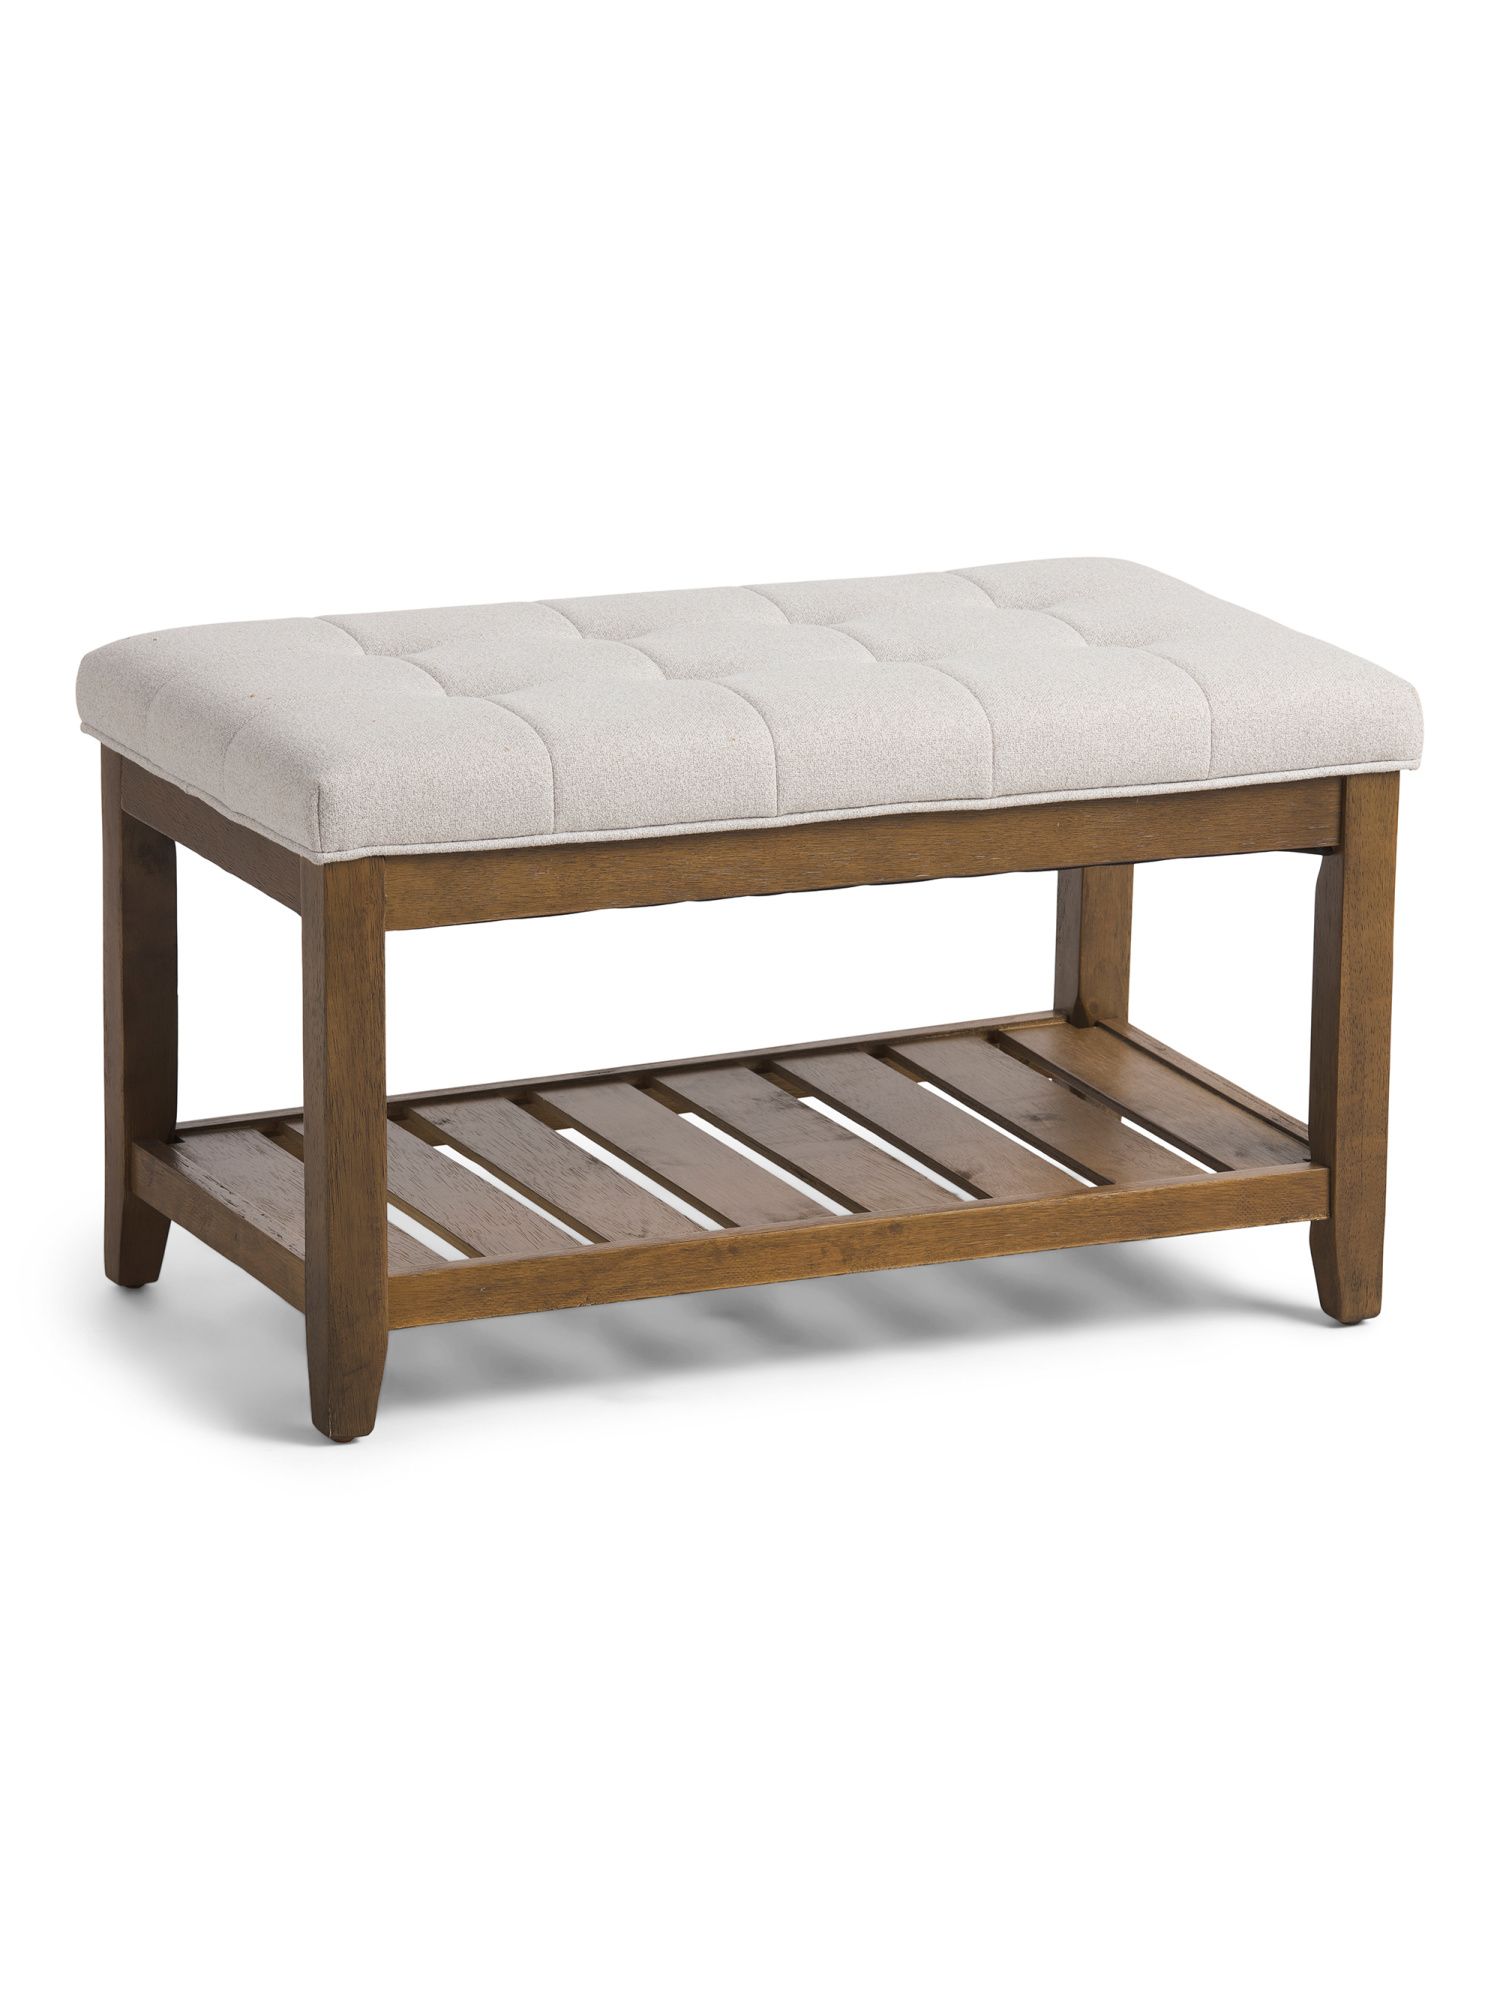 Bench With Storage Shelf | Chairs & Seating | Marshalls | Marshalls